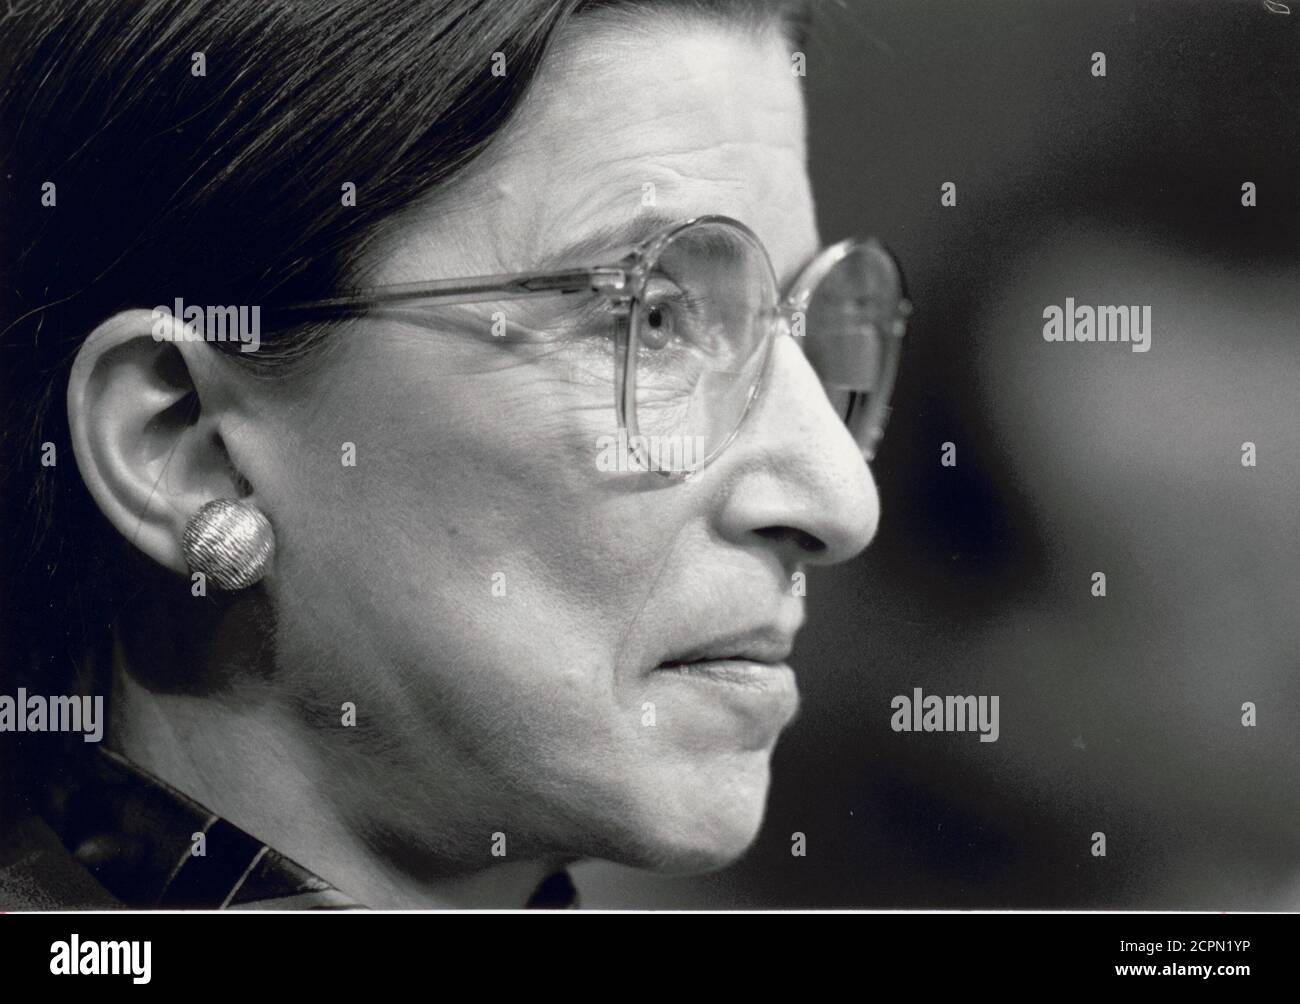 Profilportrait von Ruth Bader Ginsburg bei der Anhörung des Justizausschusses des Senats für ihre Ernennung zum Obersten Gerichtshof, Washington, DC, 7/20/1993. (Foto von Michael R Jenkins/Congressional Quarterly/RBM Vintage Images) Stockfoto